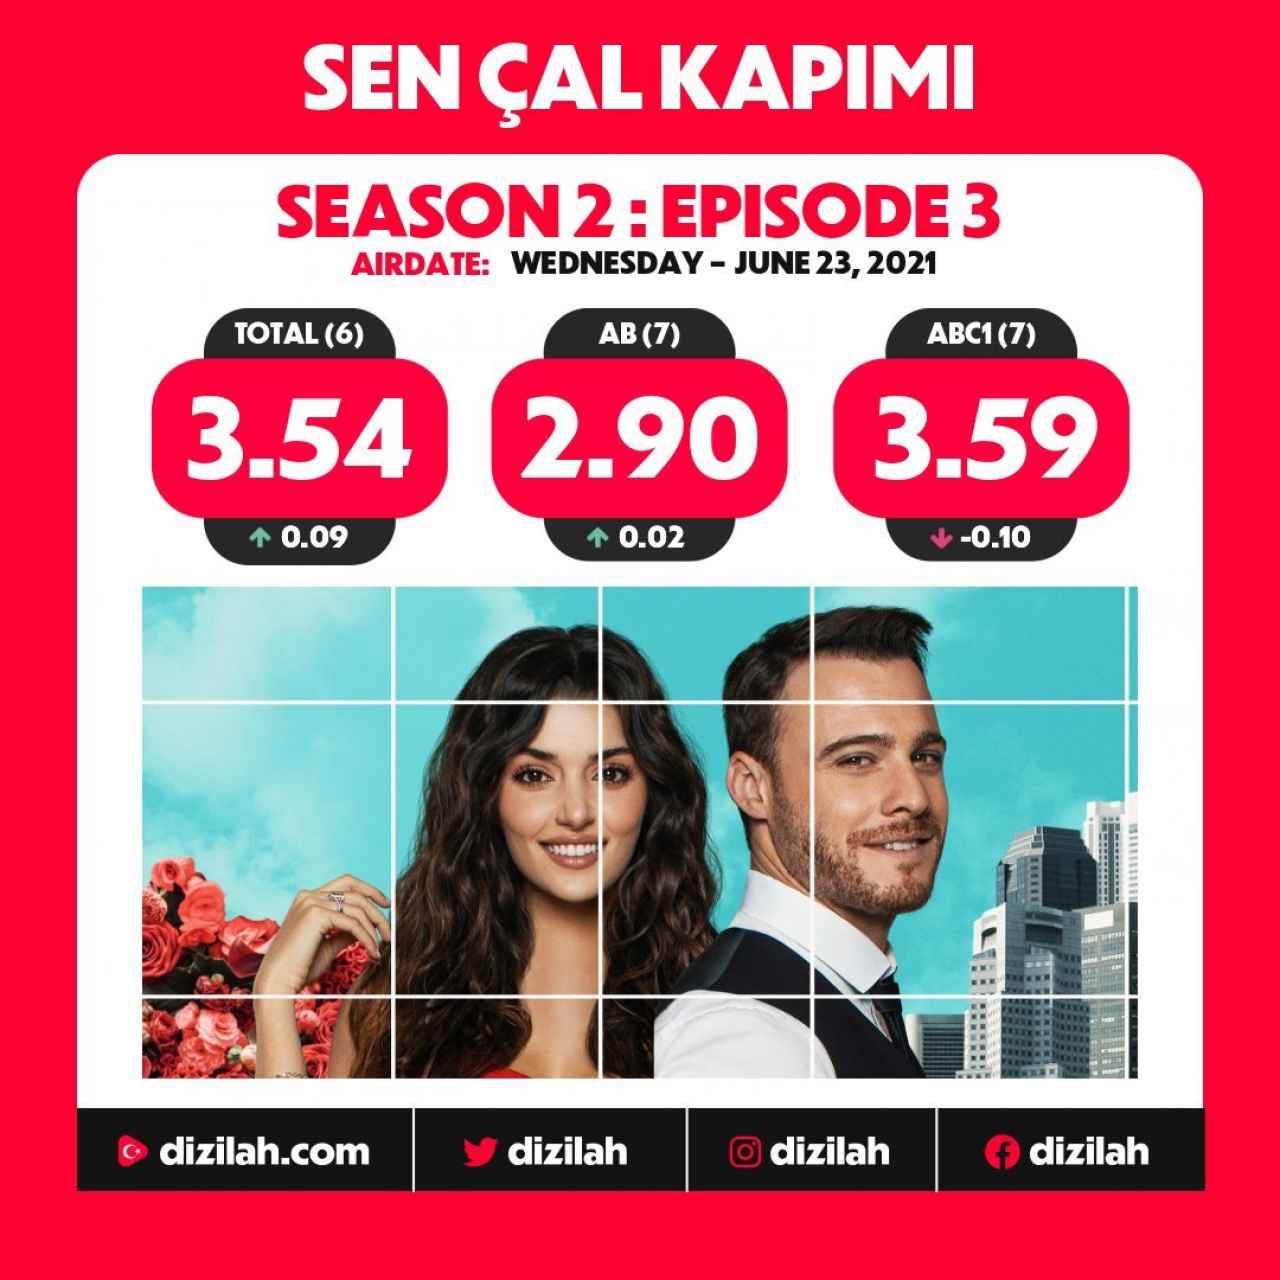 Audiencia del episodio 42 de 'Sen Cal Kapimi' en Turquía.